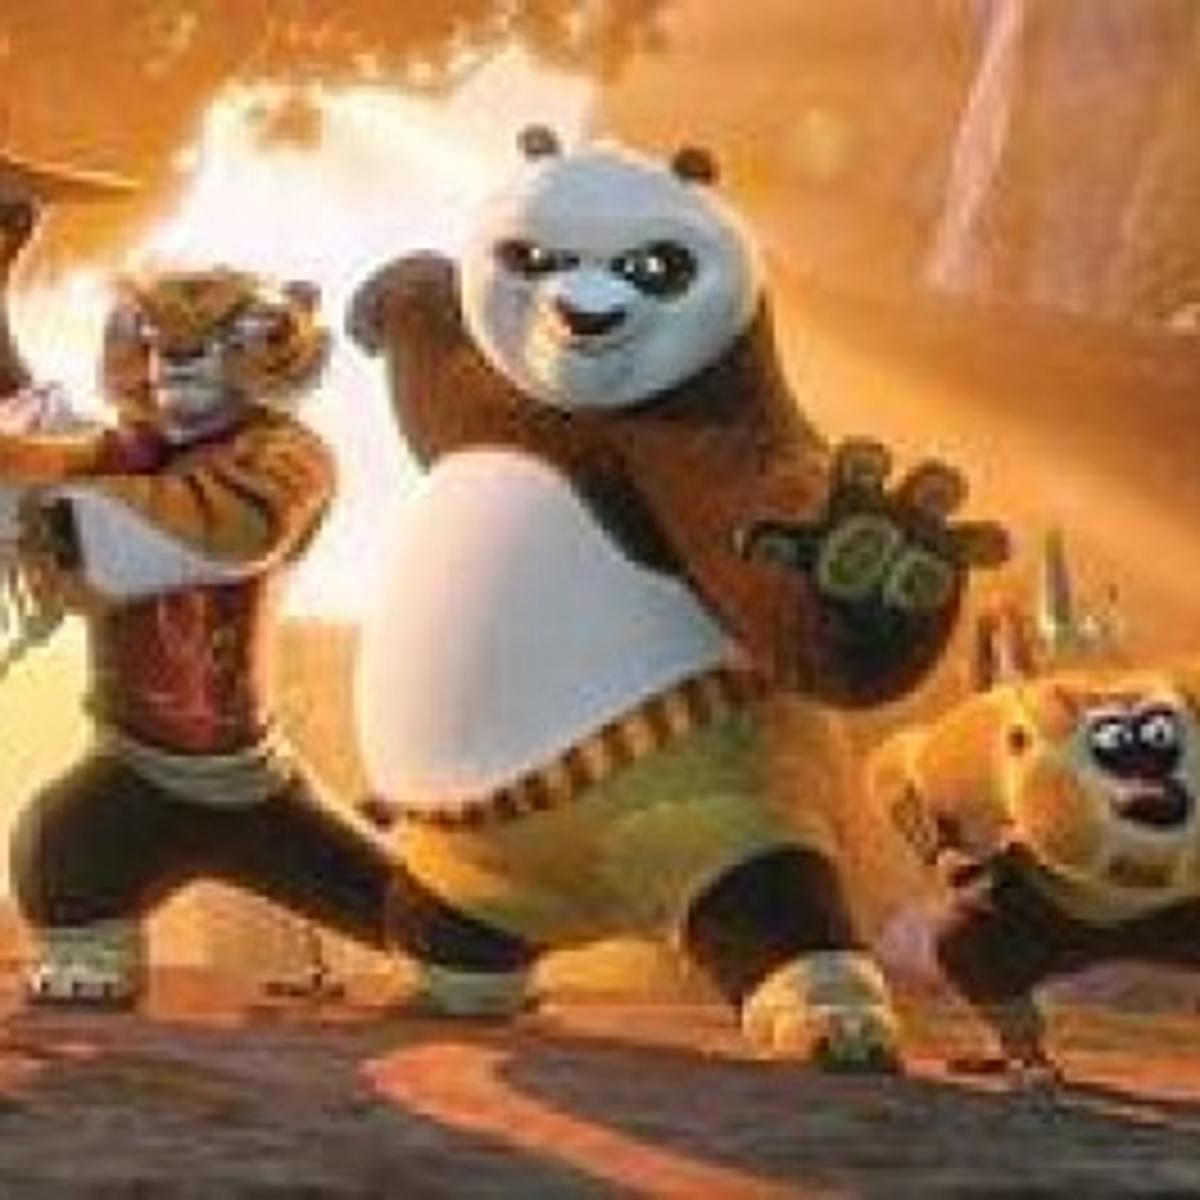 Kung Fu Panda 2: It's an 8